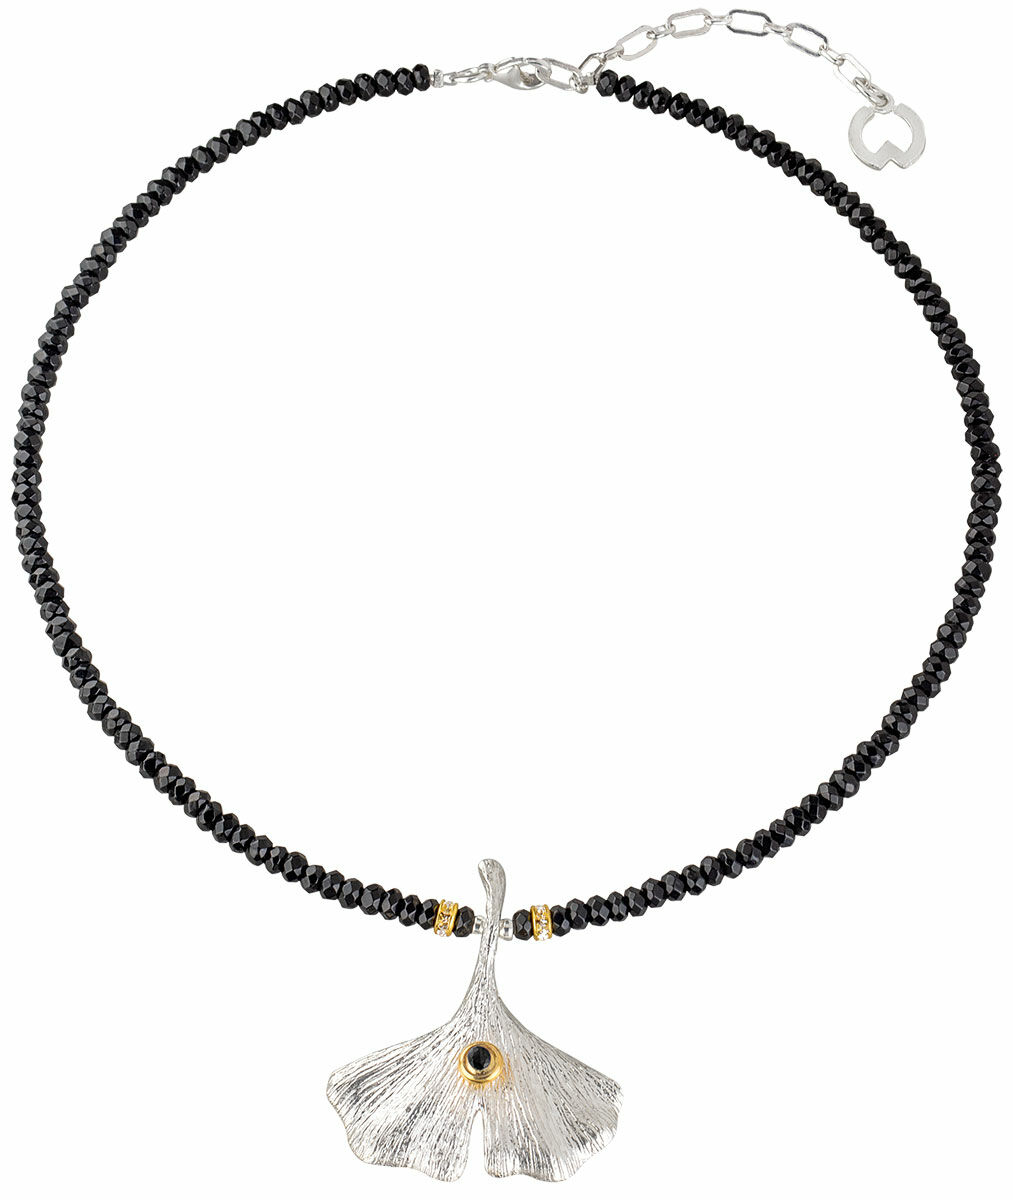 Necklace "Ginkgo with Onyx" by Petra Waszak